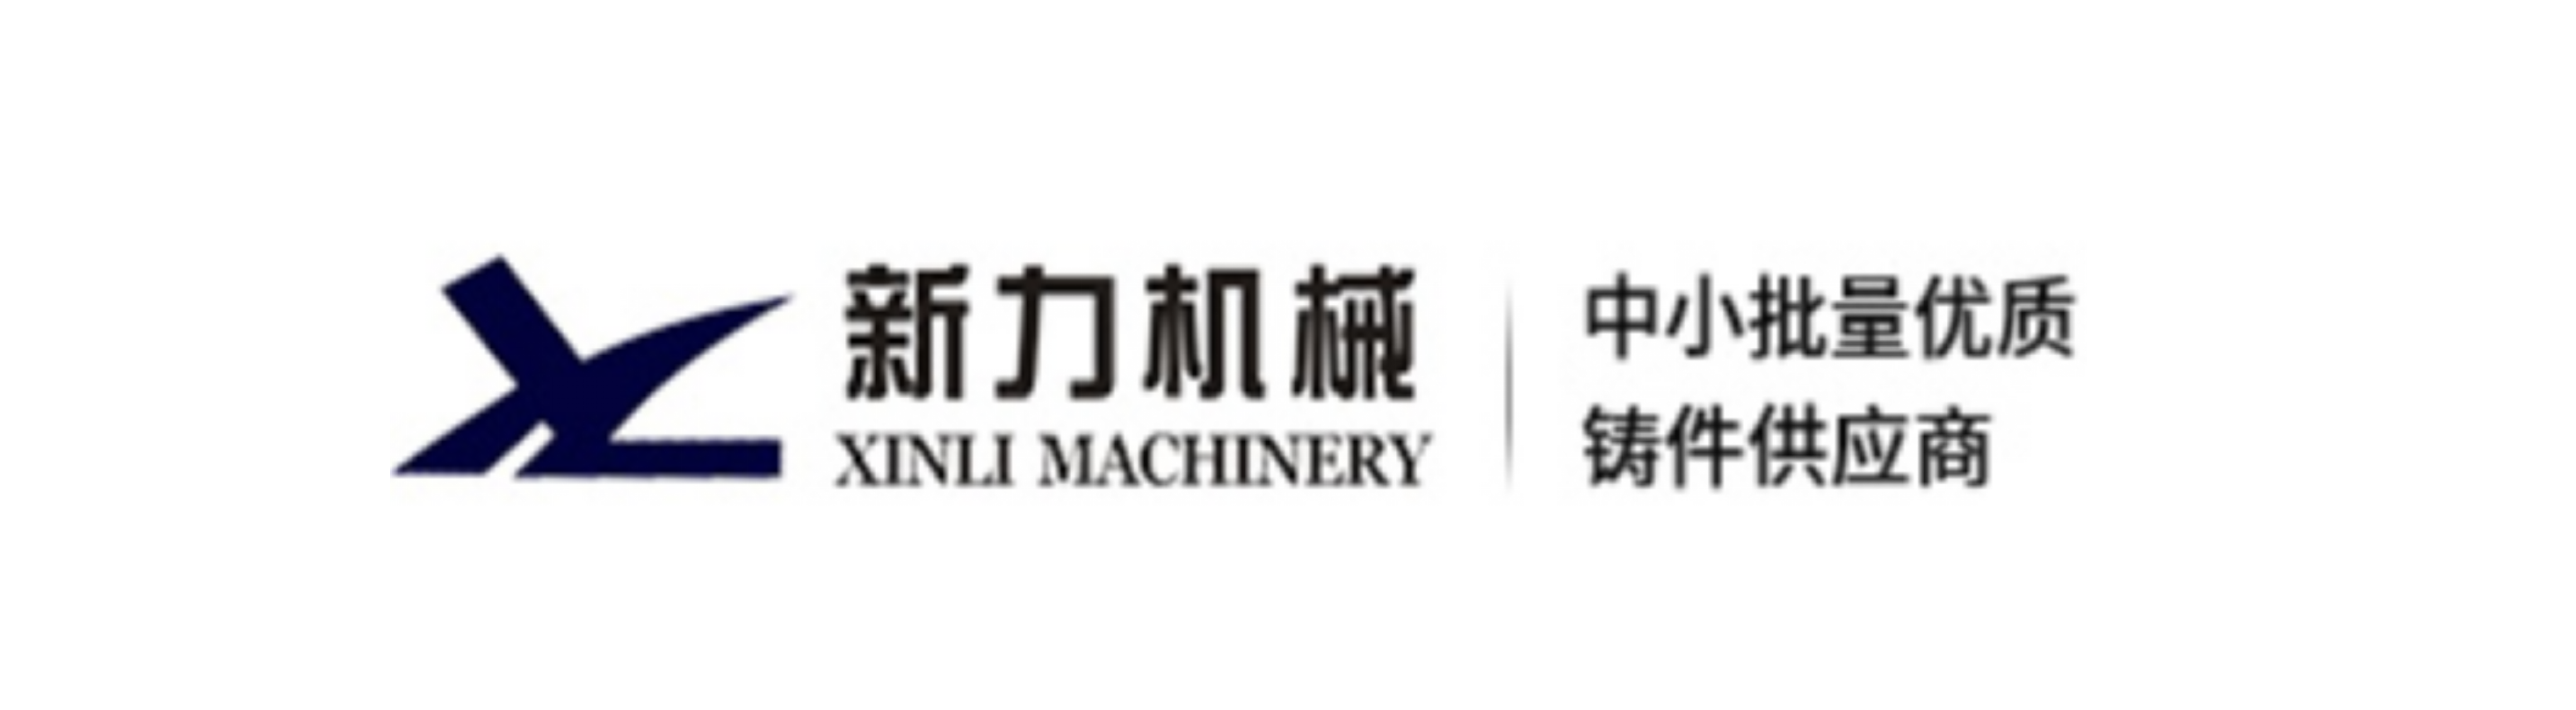 溧阳市新力机械铸造有限公司